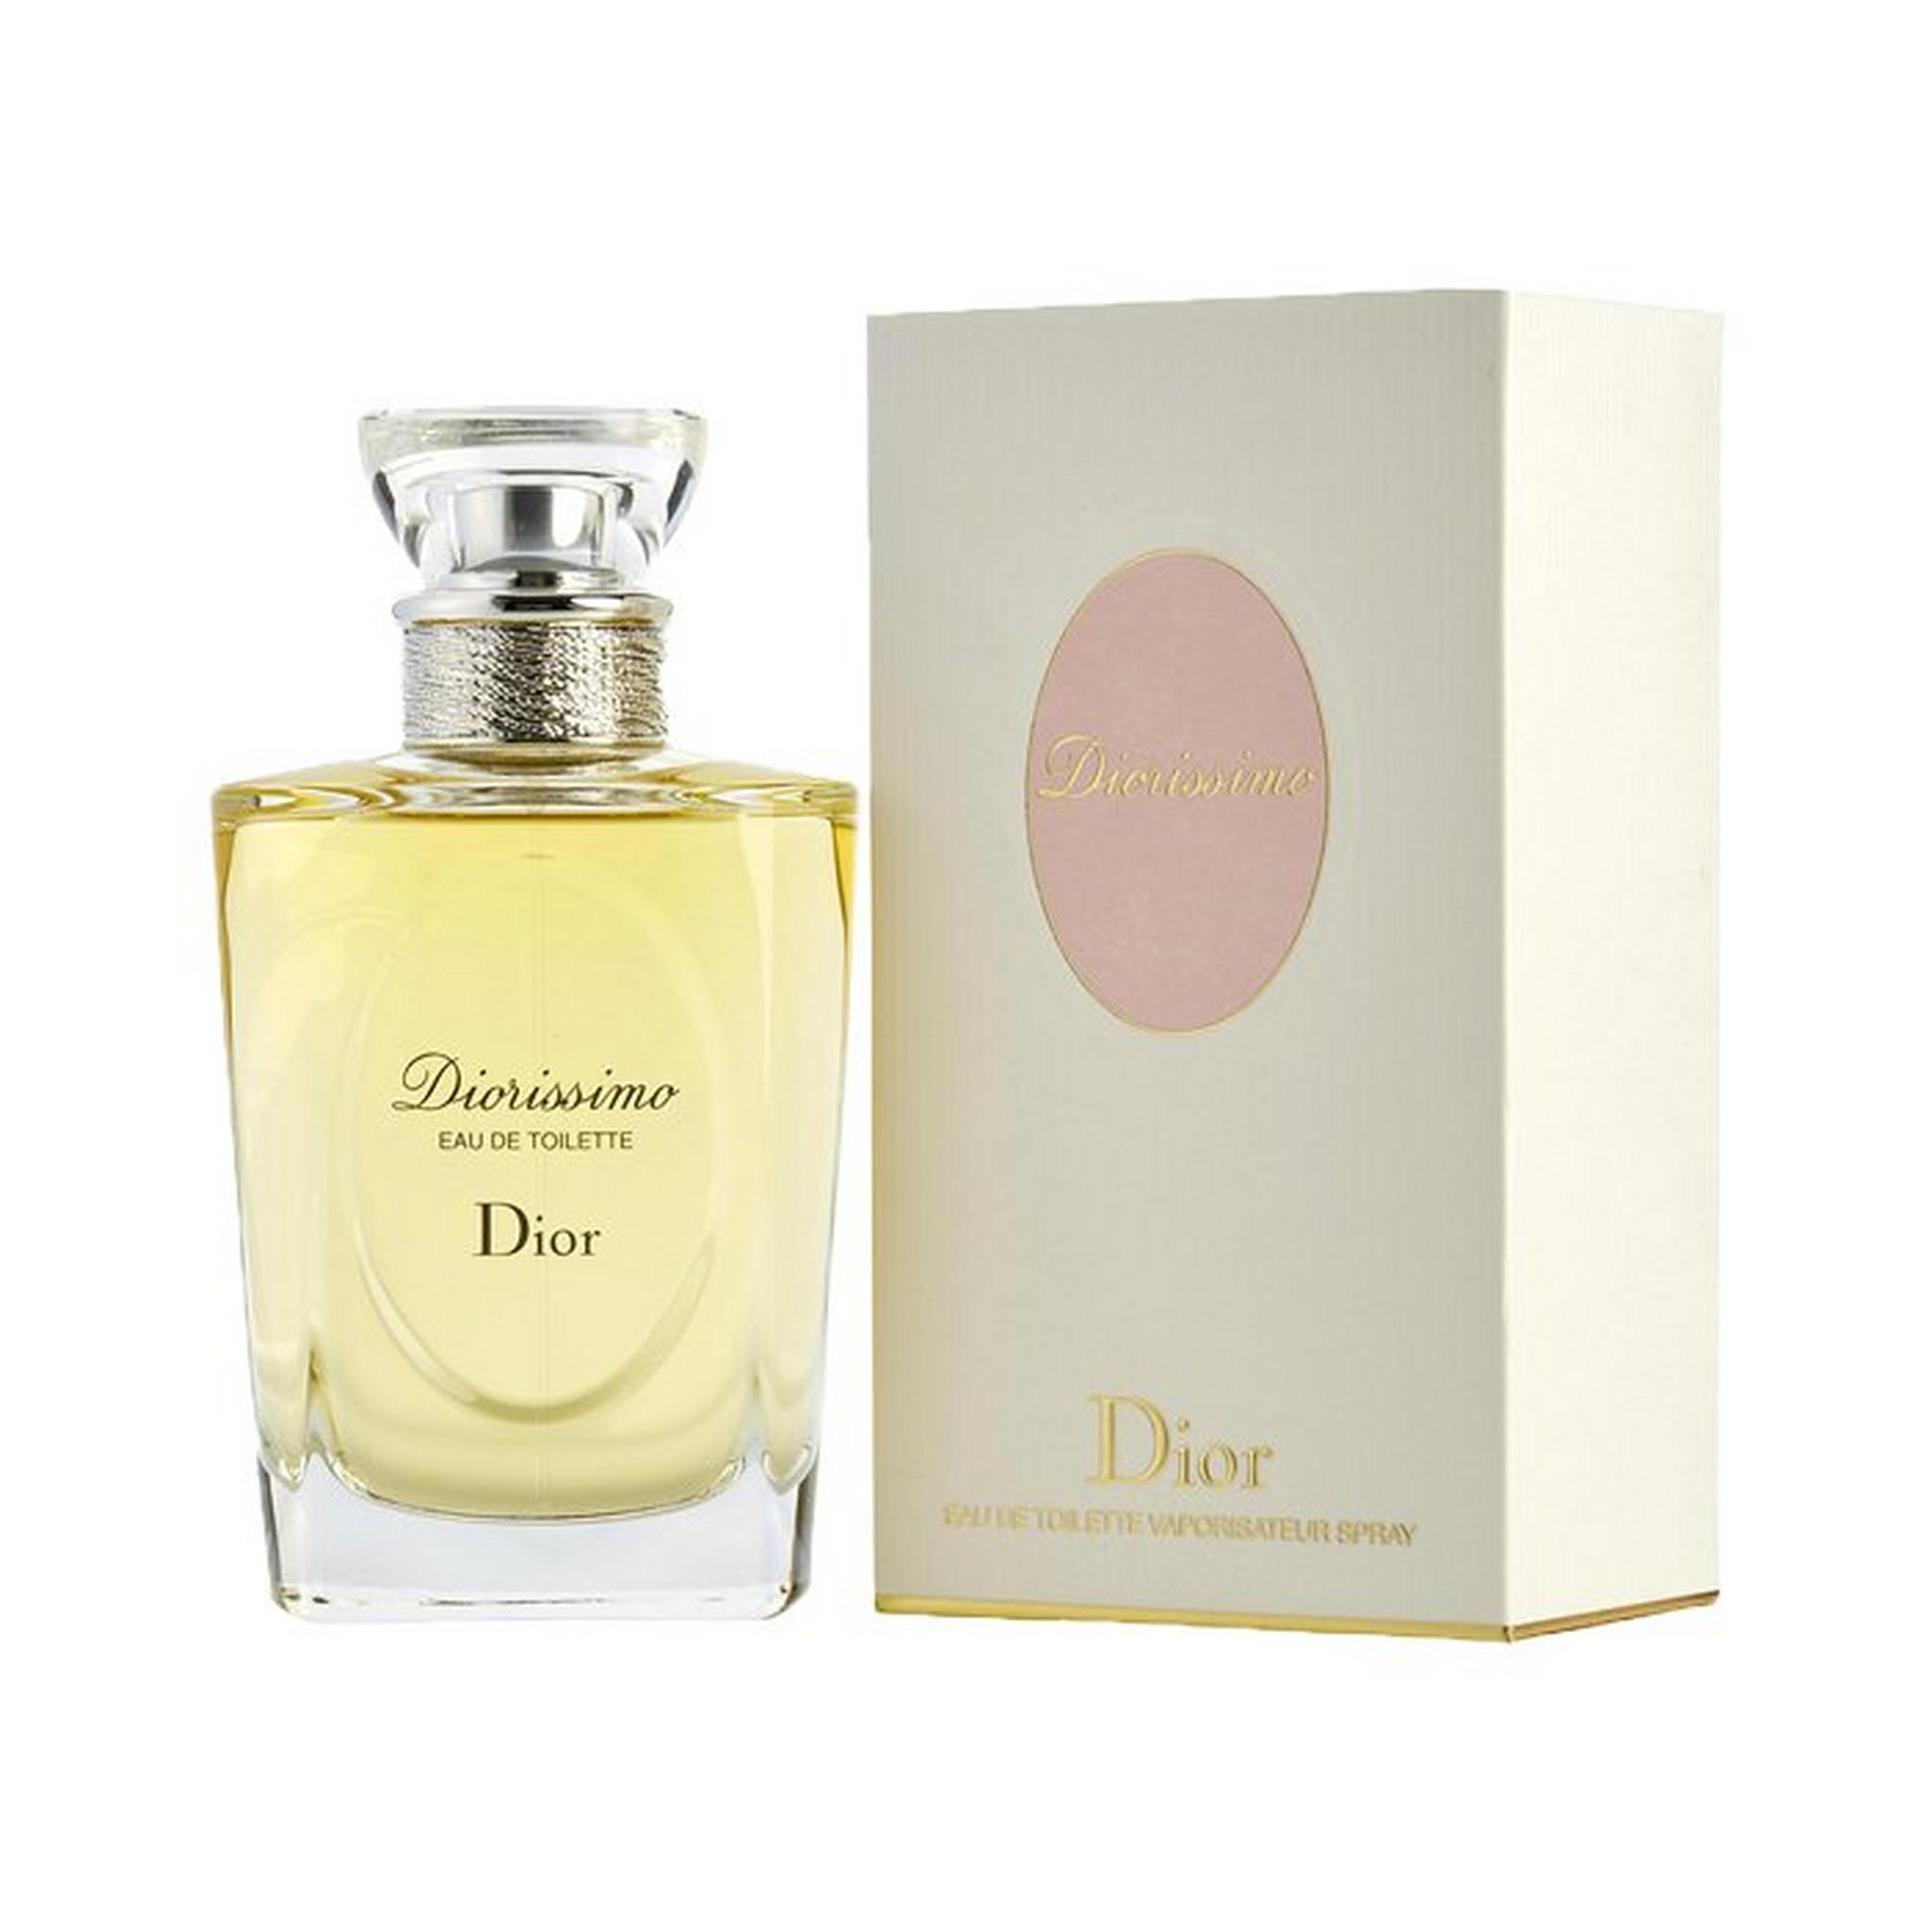 Dior Diorissimo Perfume for Women - Eau De Toilette, 100ml